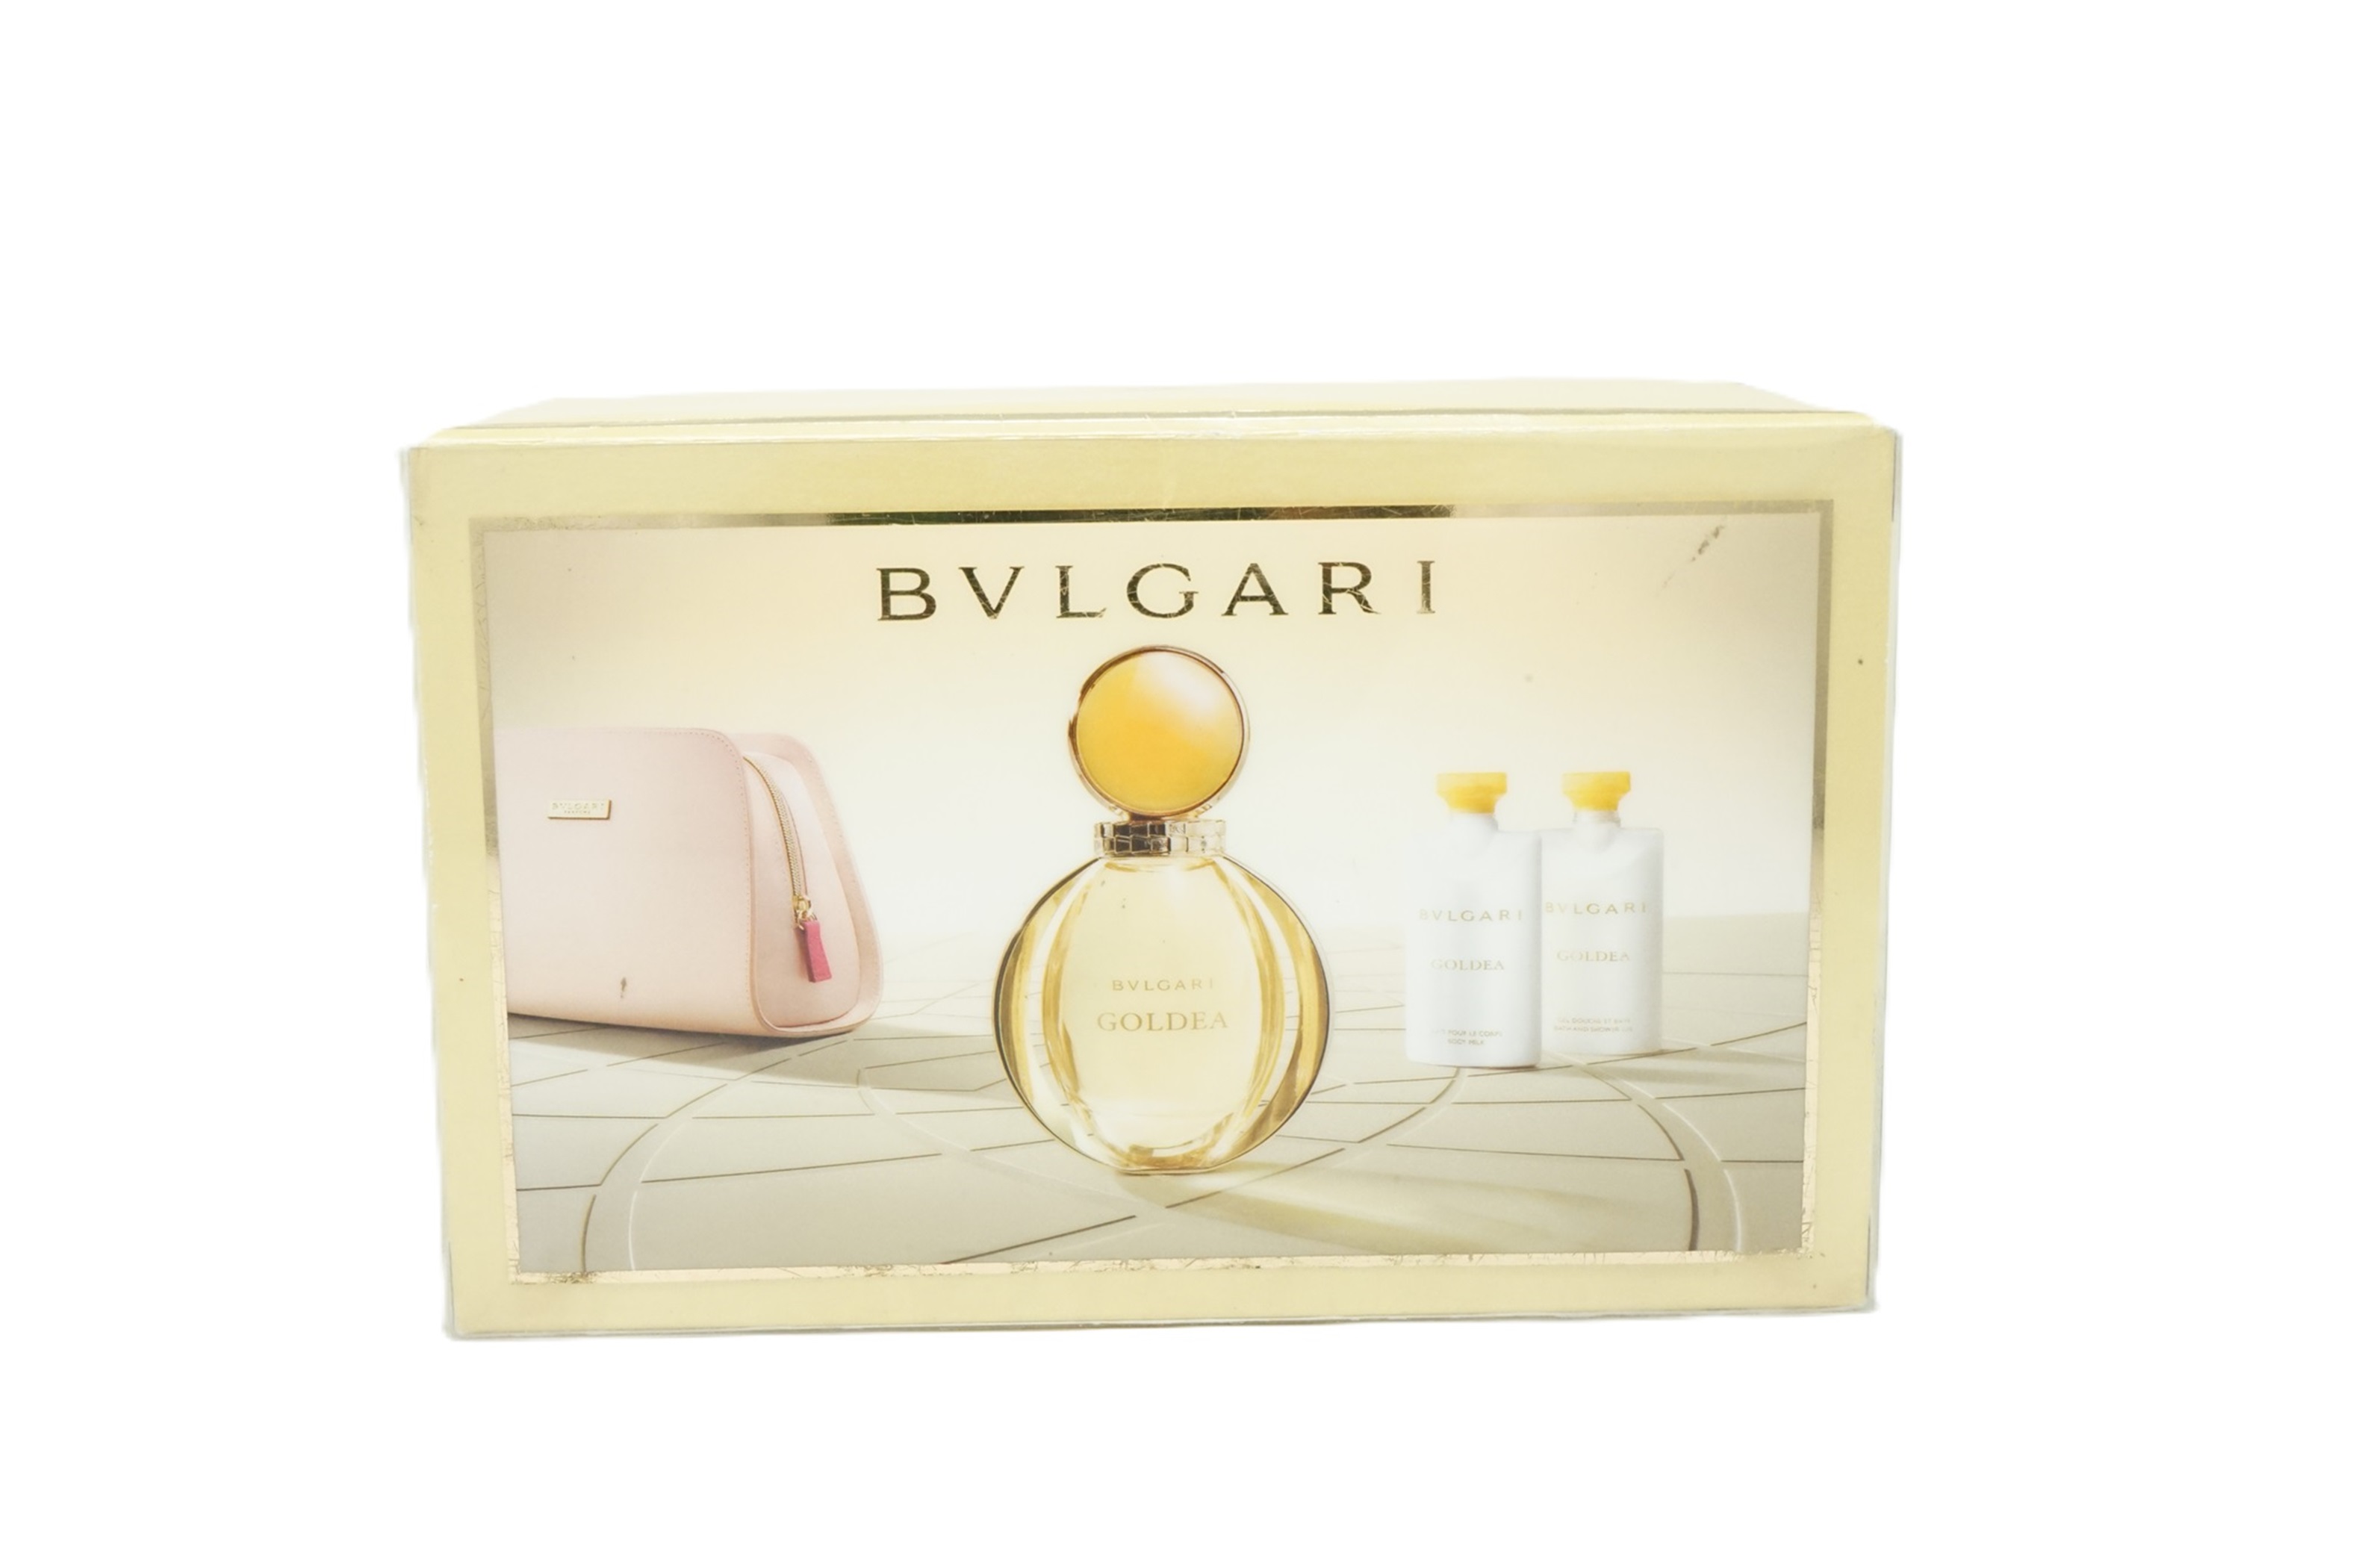 Bvlgari Goldea Eau de Parfum 90 ml + Shower Gel 75 ml + Body Milk 75ml